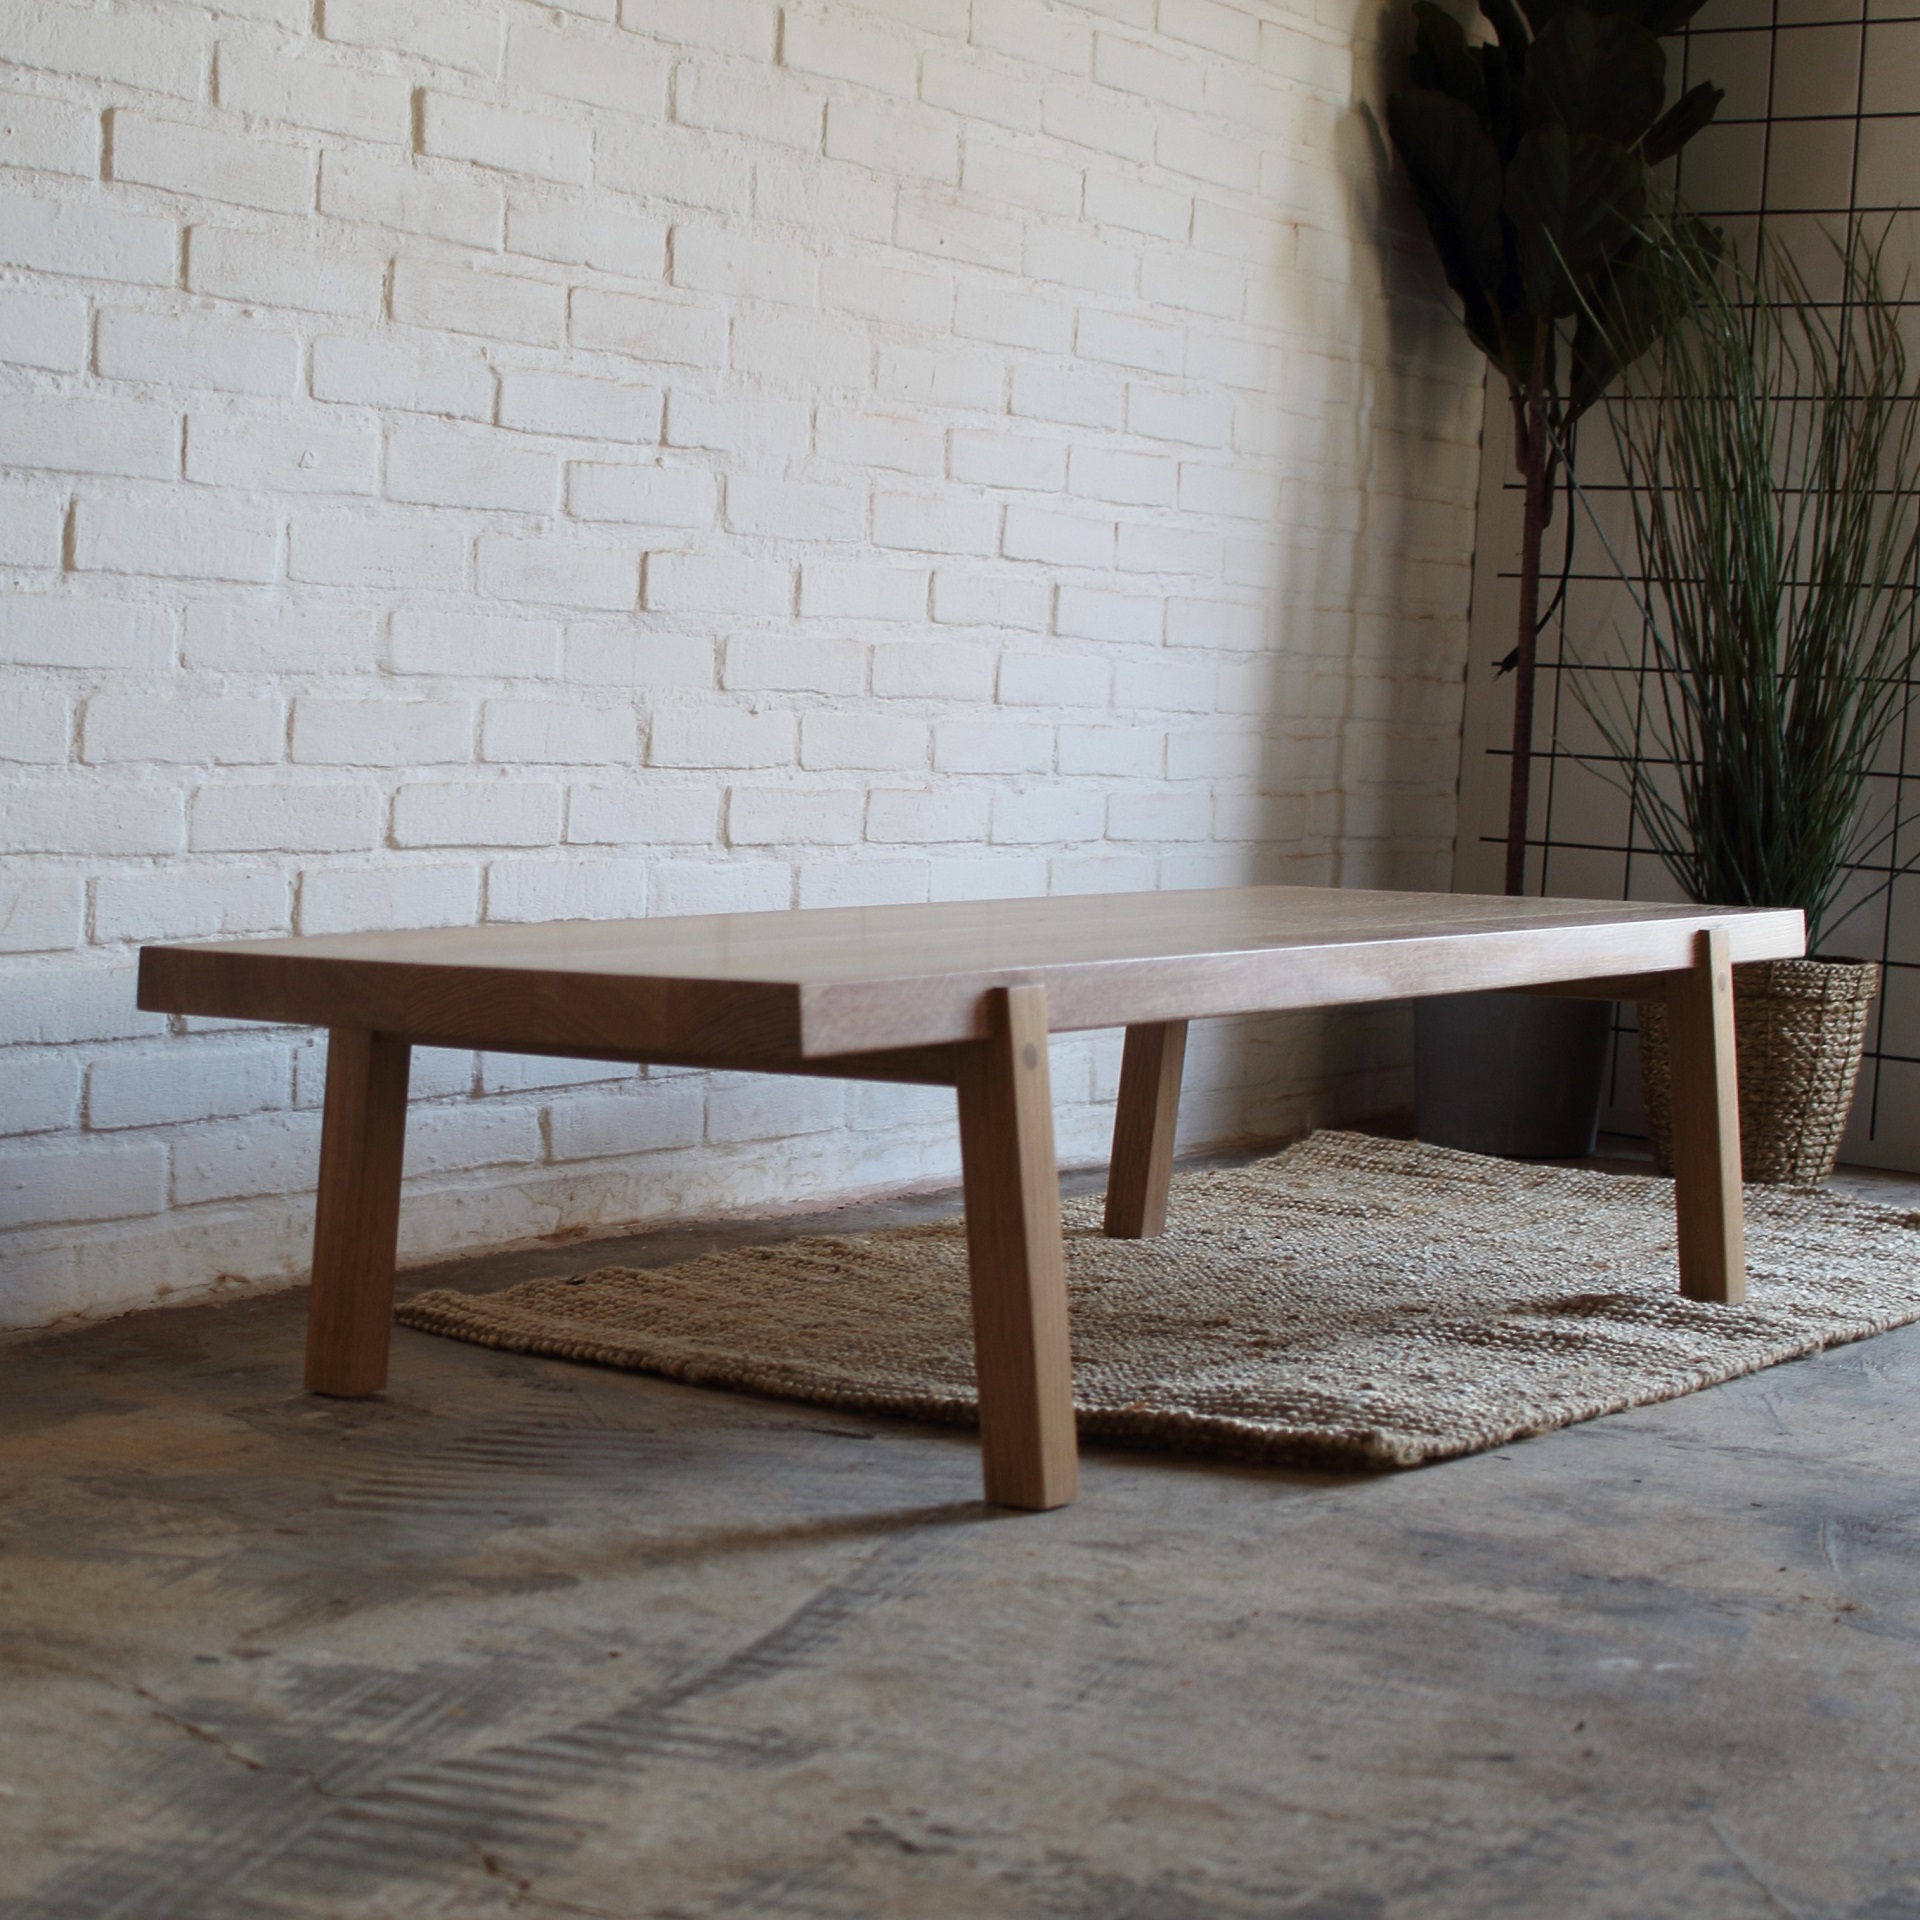 Cette table basse est un meuble solitaire à l'allure quelque peu discrète, avec de petits détails expressifs. Ainsi, à 5º, tout est bien en place.